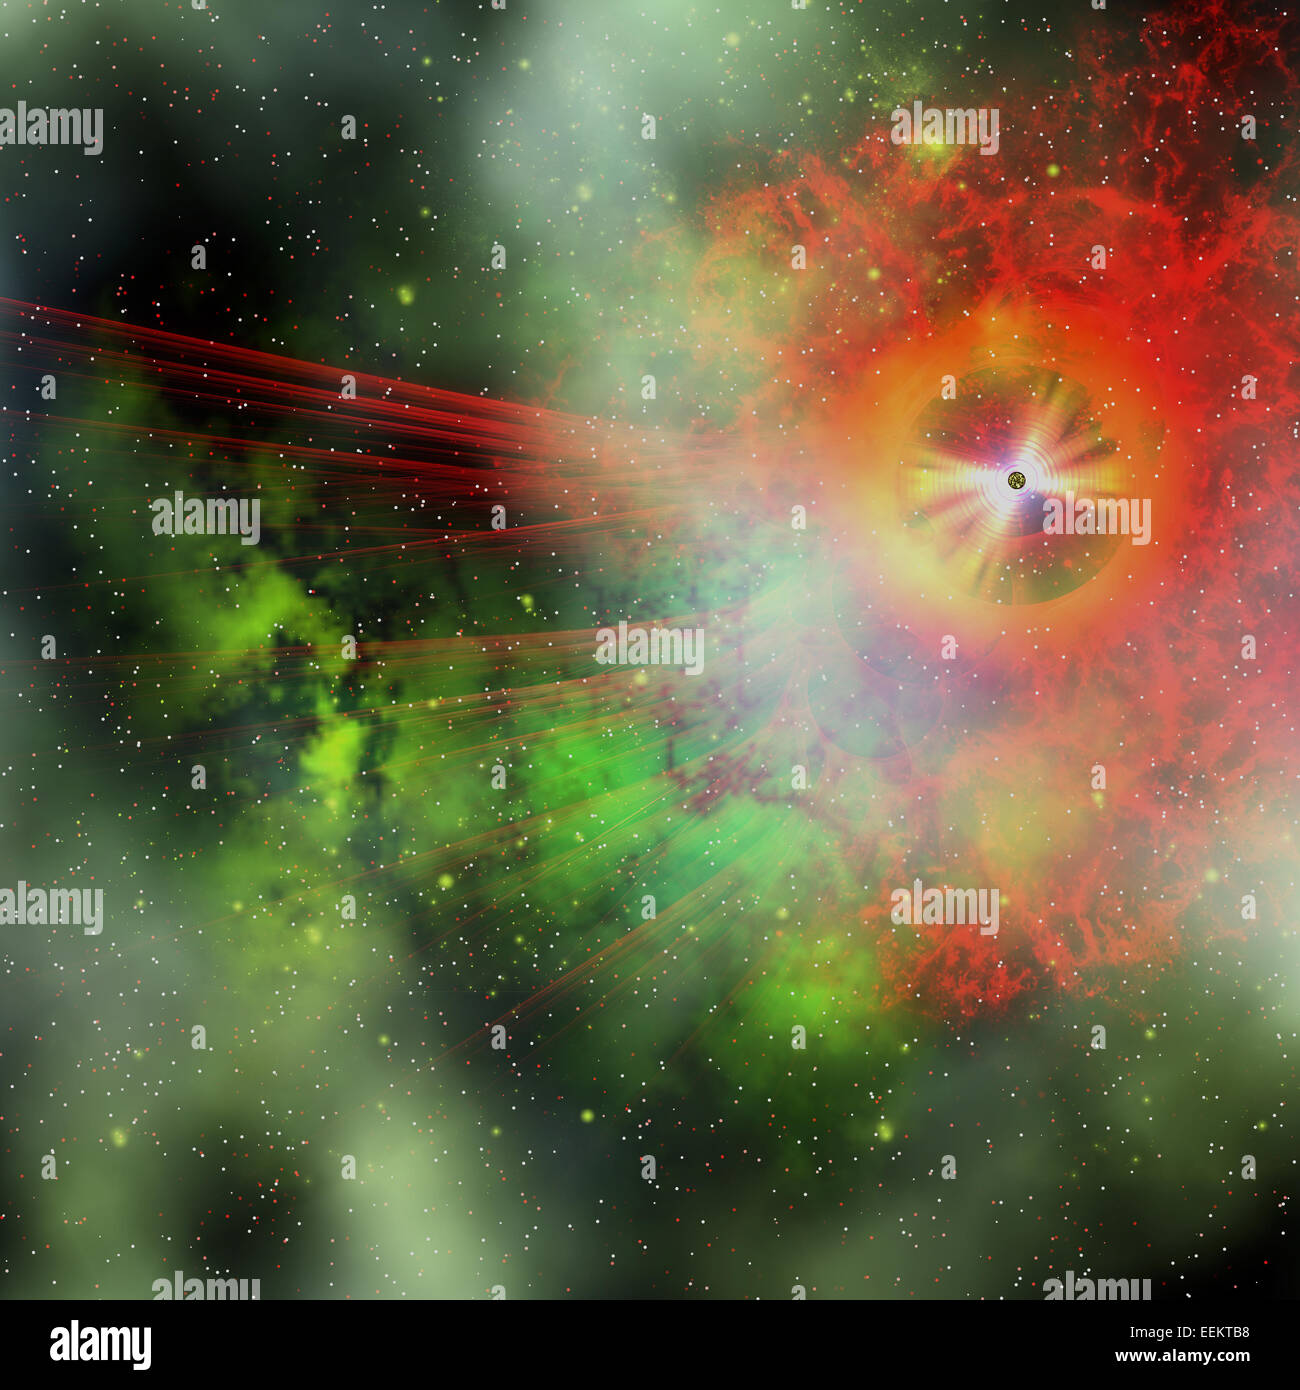 Una stella avente la massa di più di 8 masse solari ha una durata breve e termina in una esplosione di supernova. Foto Stock